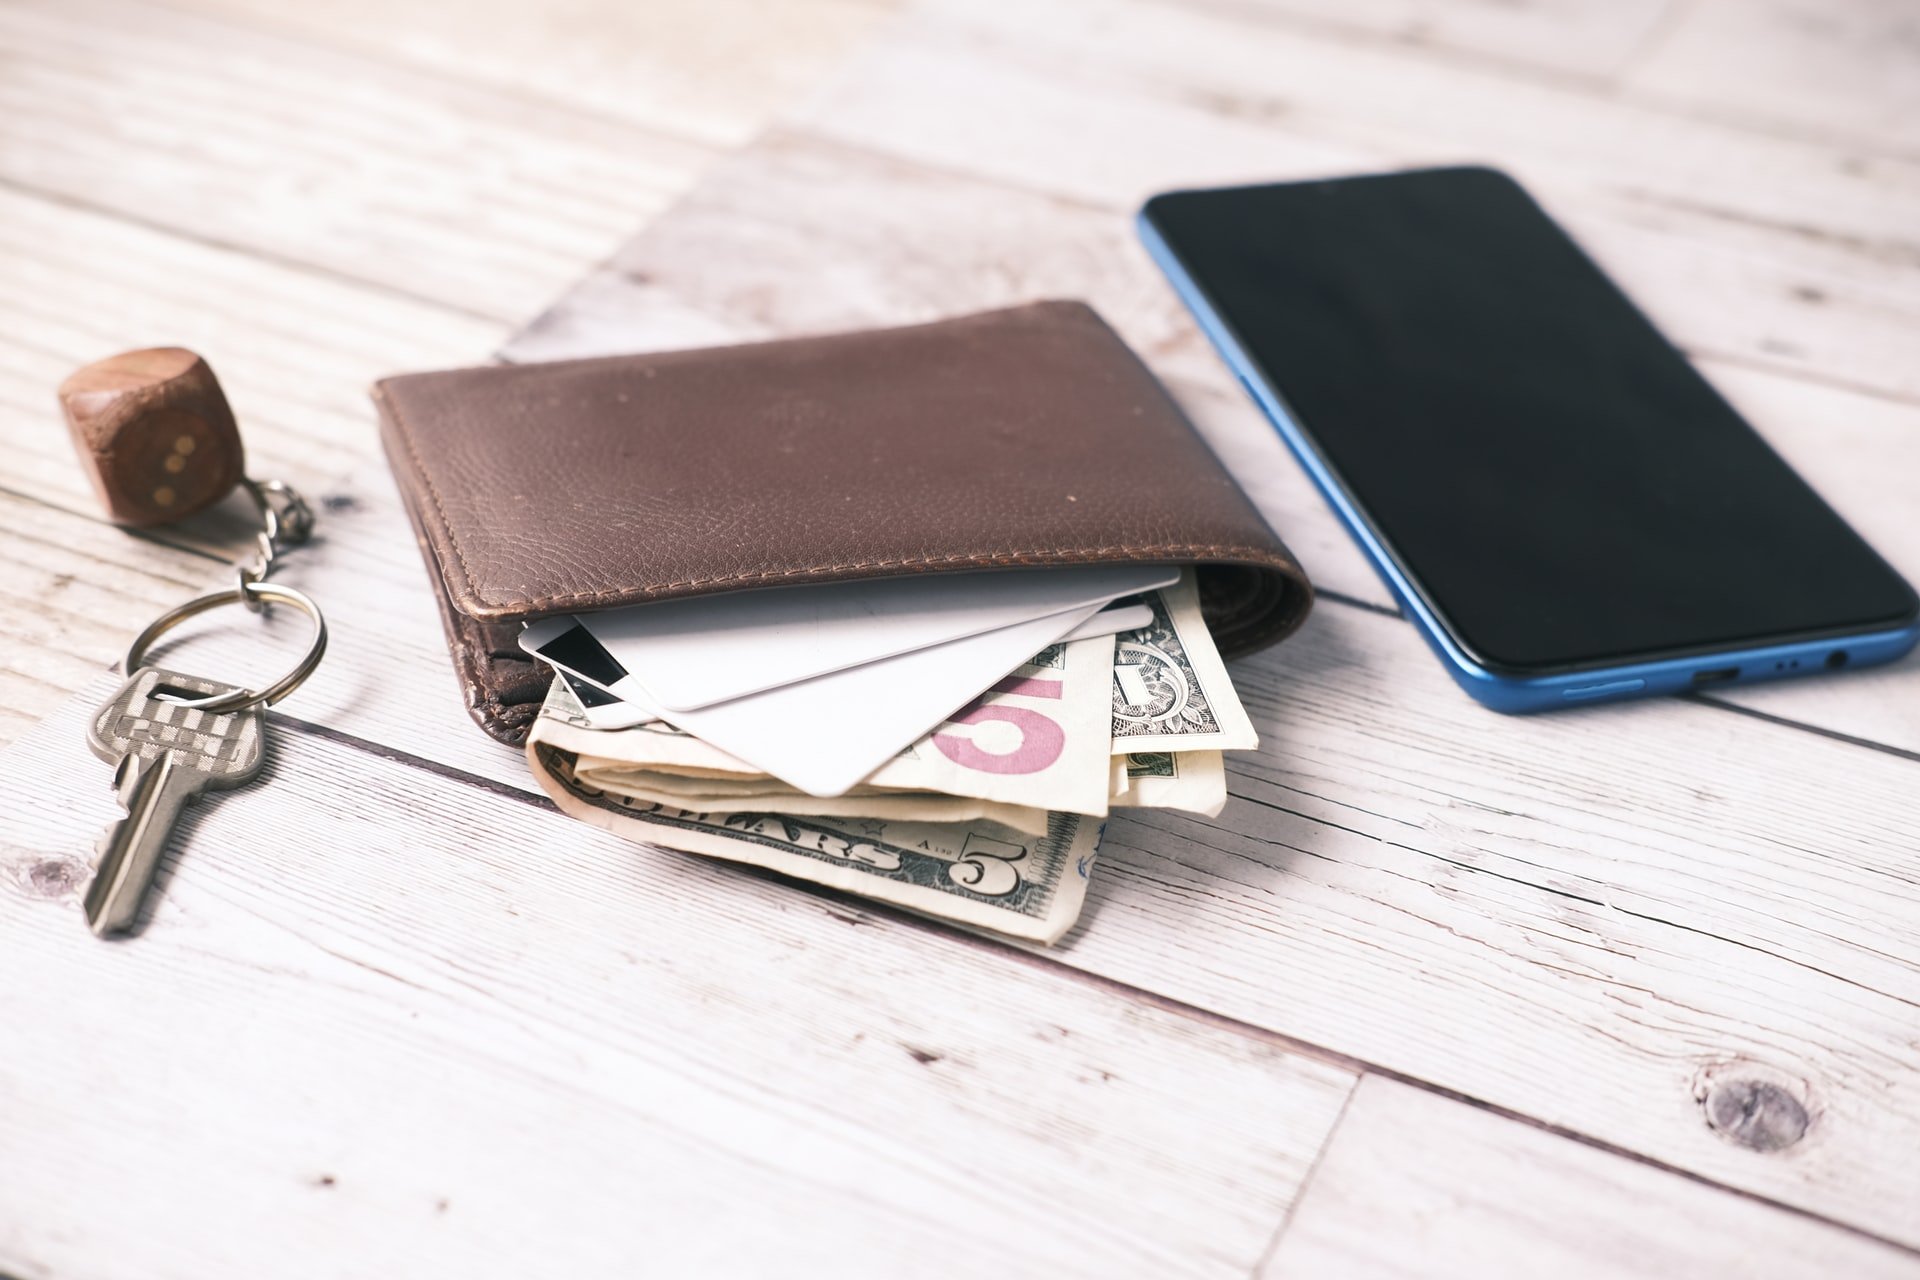 carteira e celular em cima da mesa